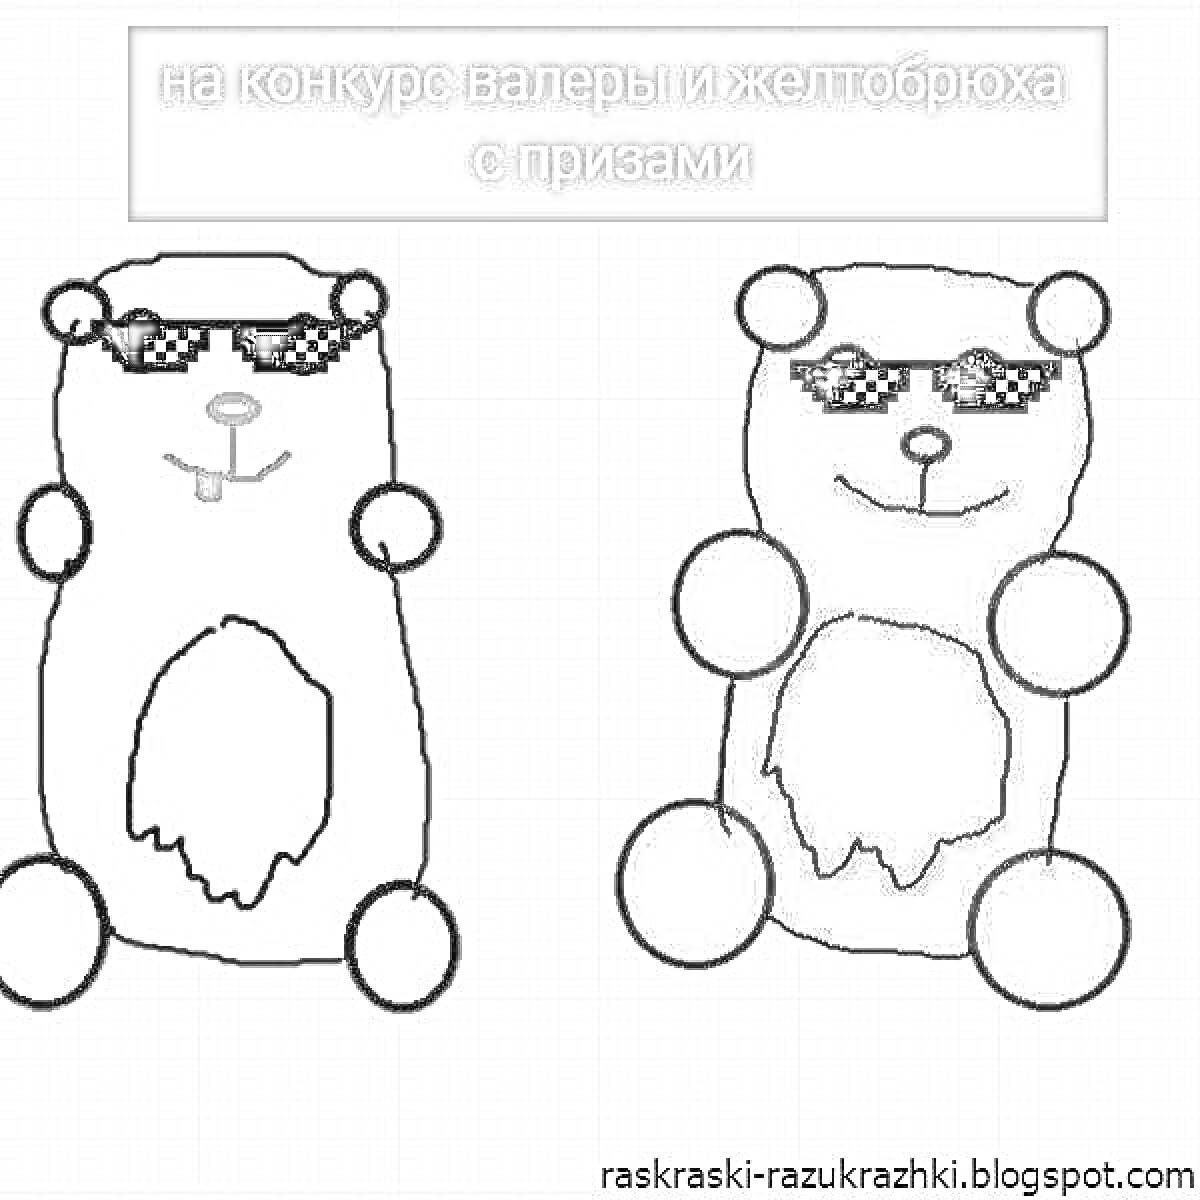 Раскраска Два медведя в очках: один жёлтый медведь с красными глазами и ушами, красным носом и языком, второй красный медведь с чёрными глазами, носом, ушами и лапами